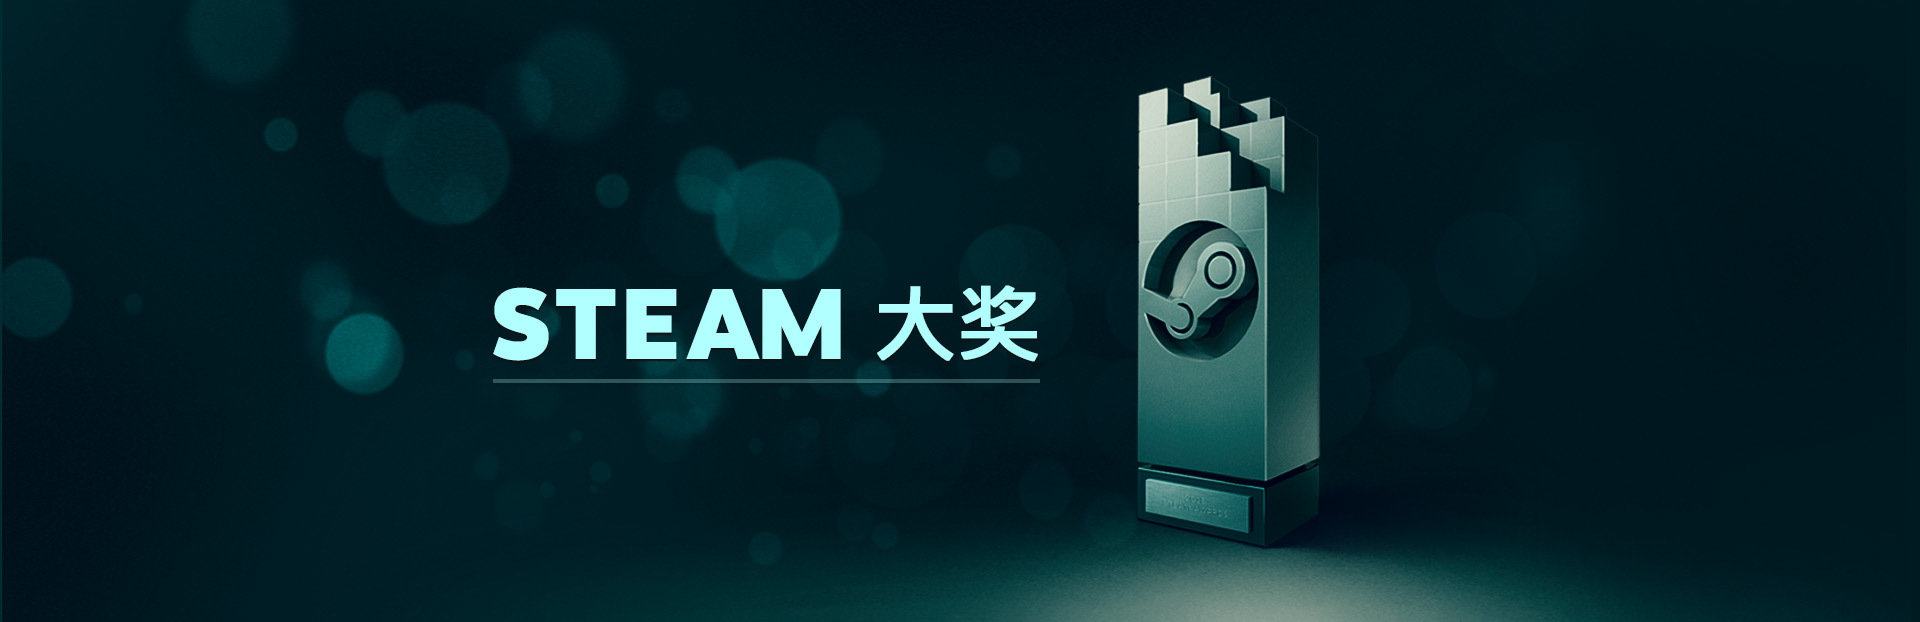 Steam Steam Blog Steam 大奖提名作品揭晓视频